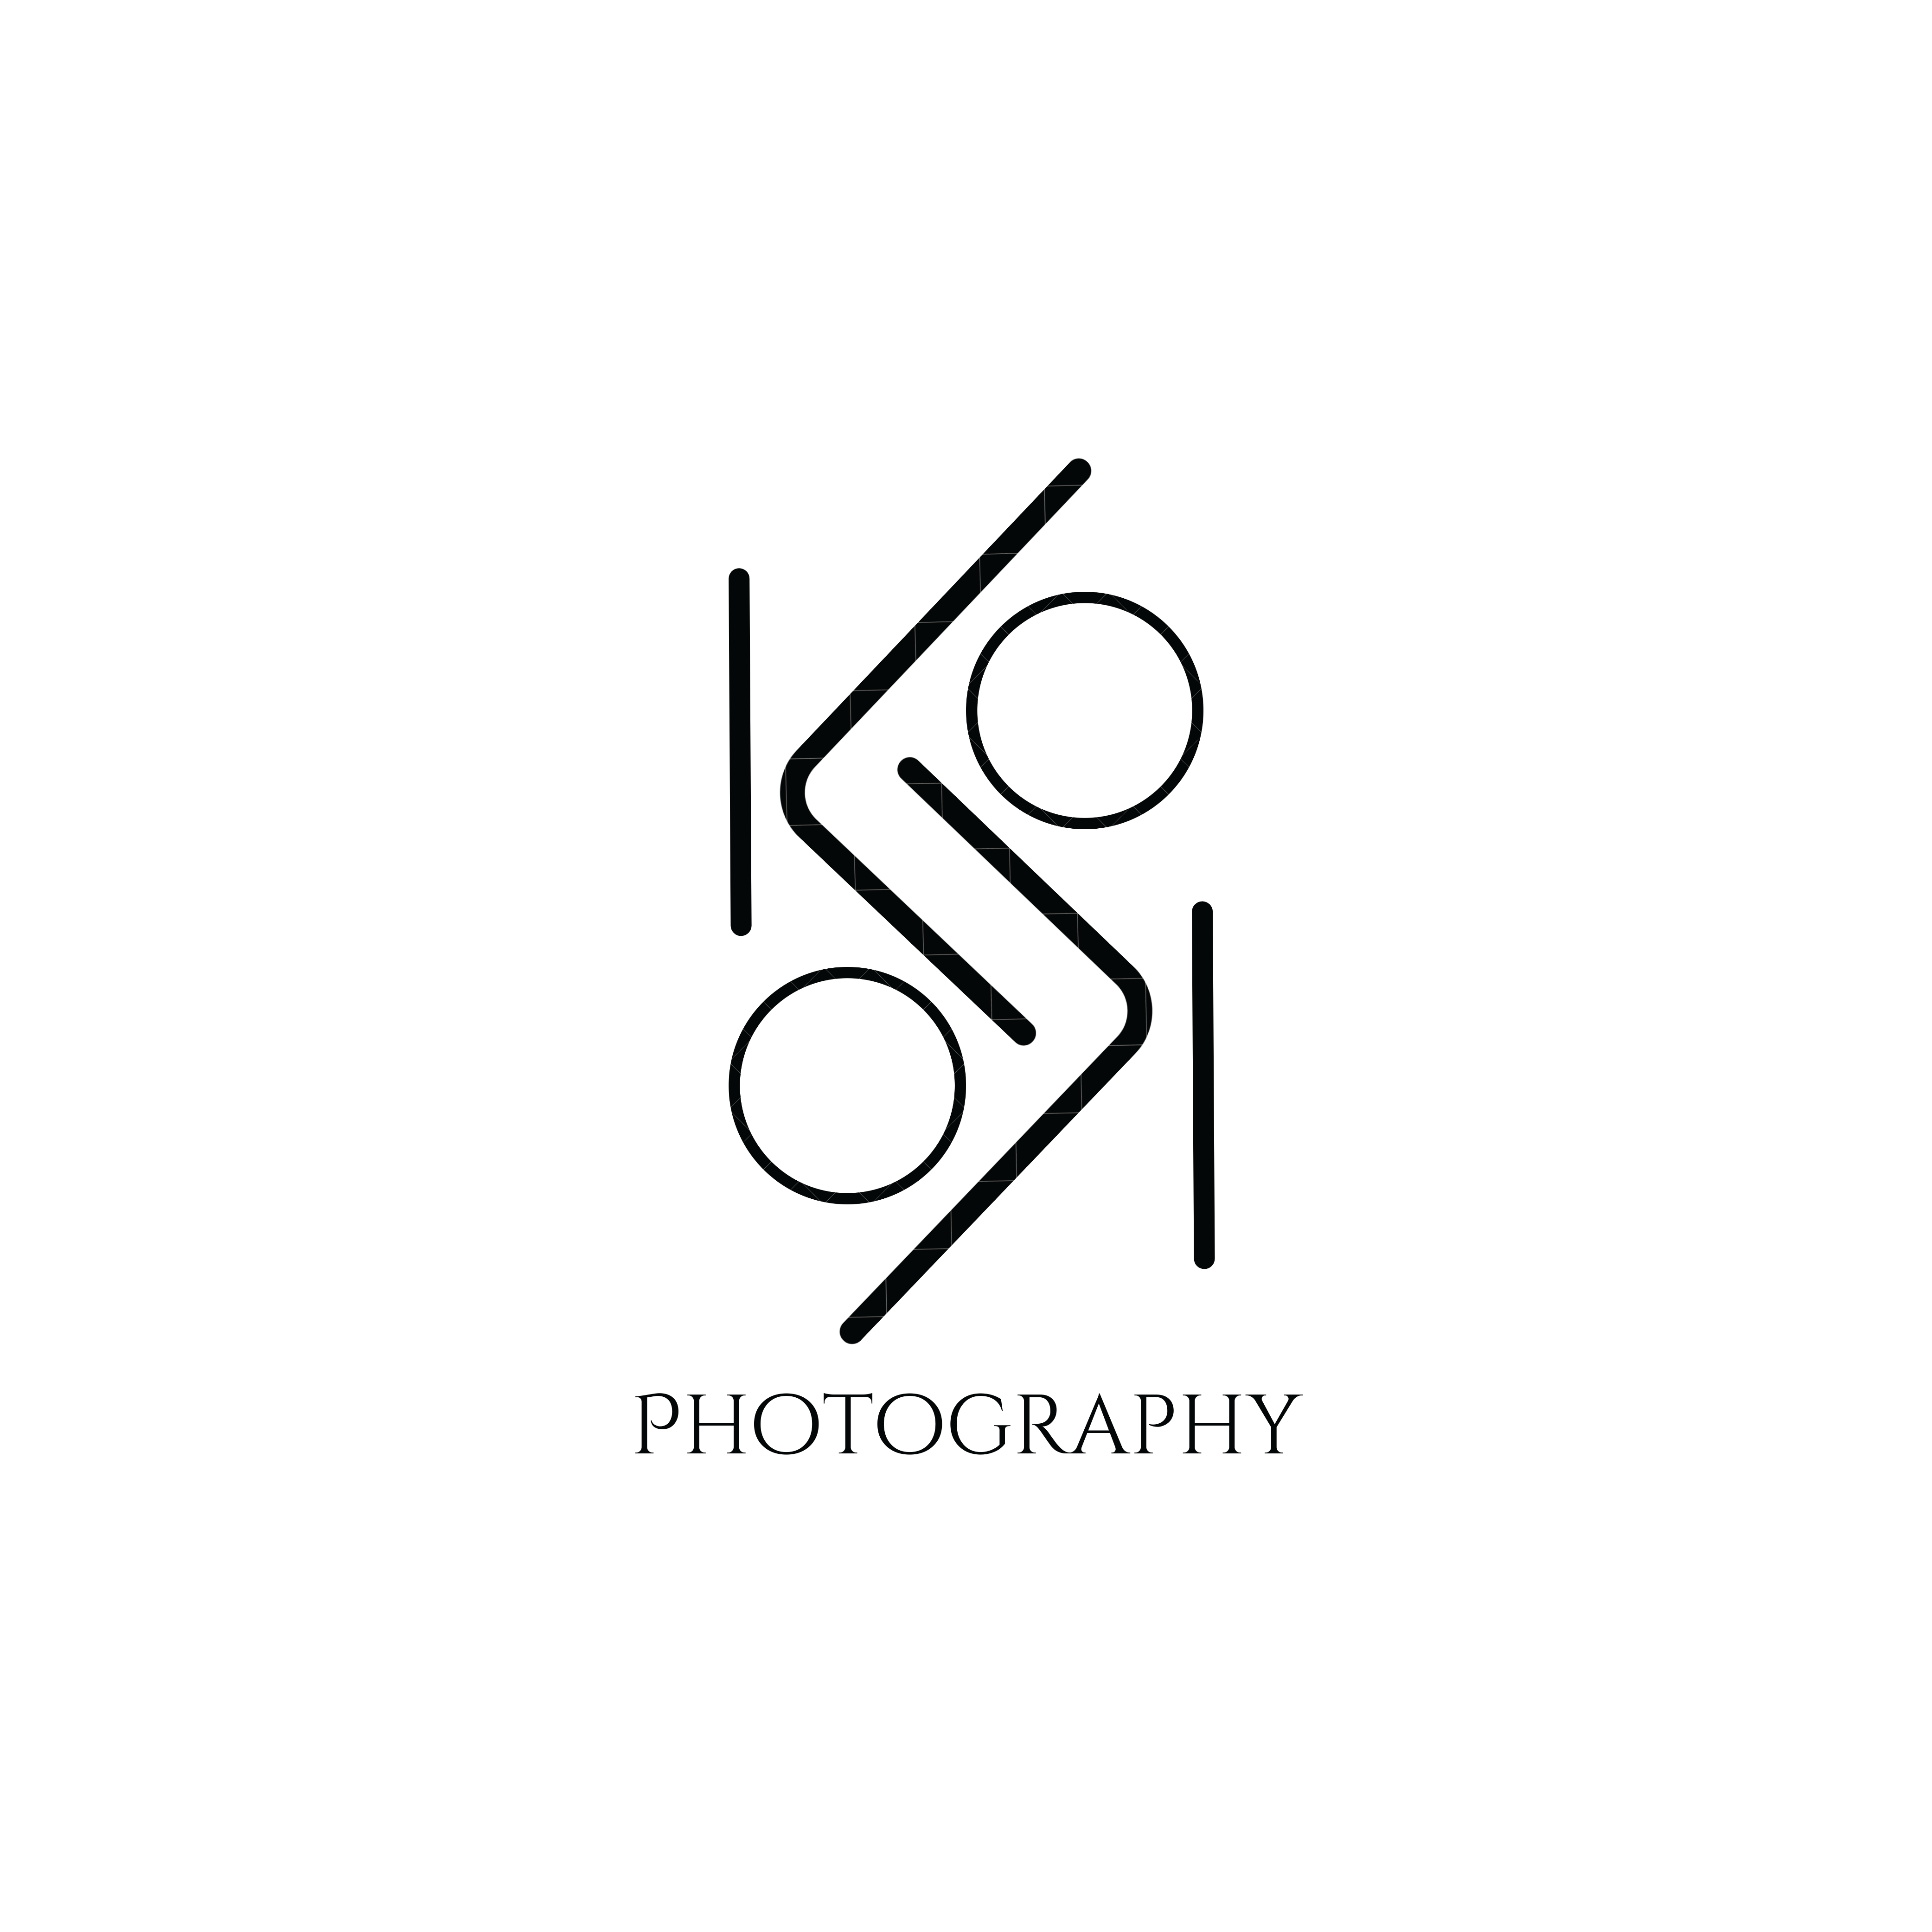 Kelo Photography